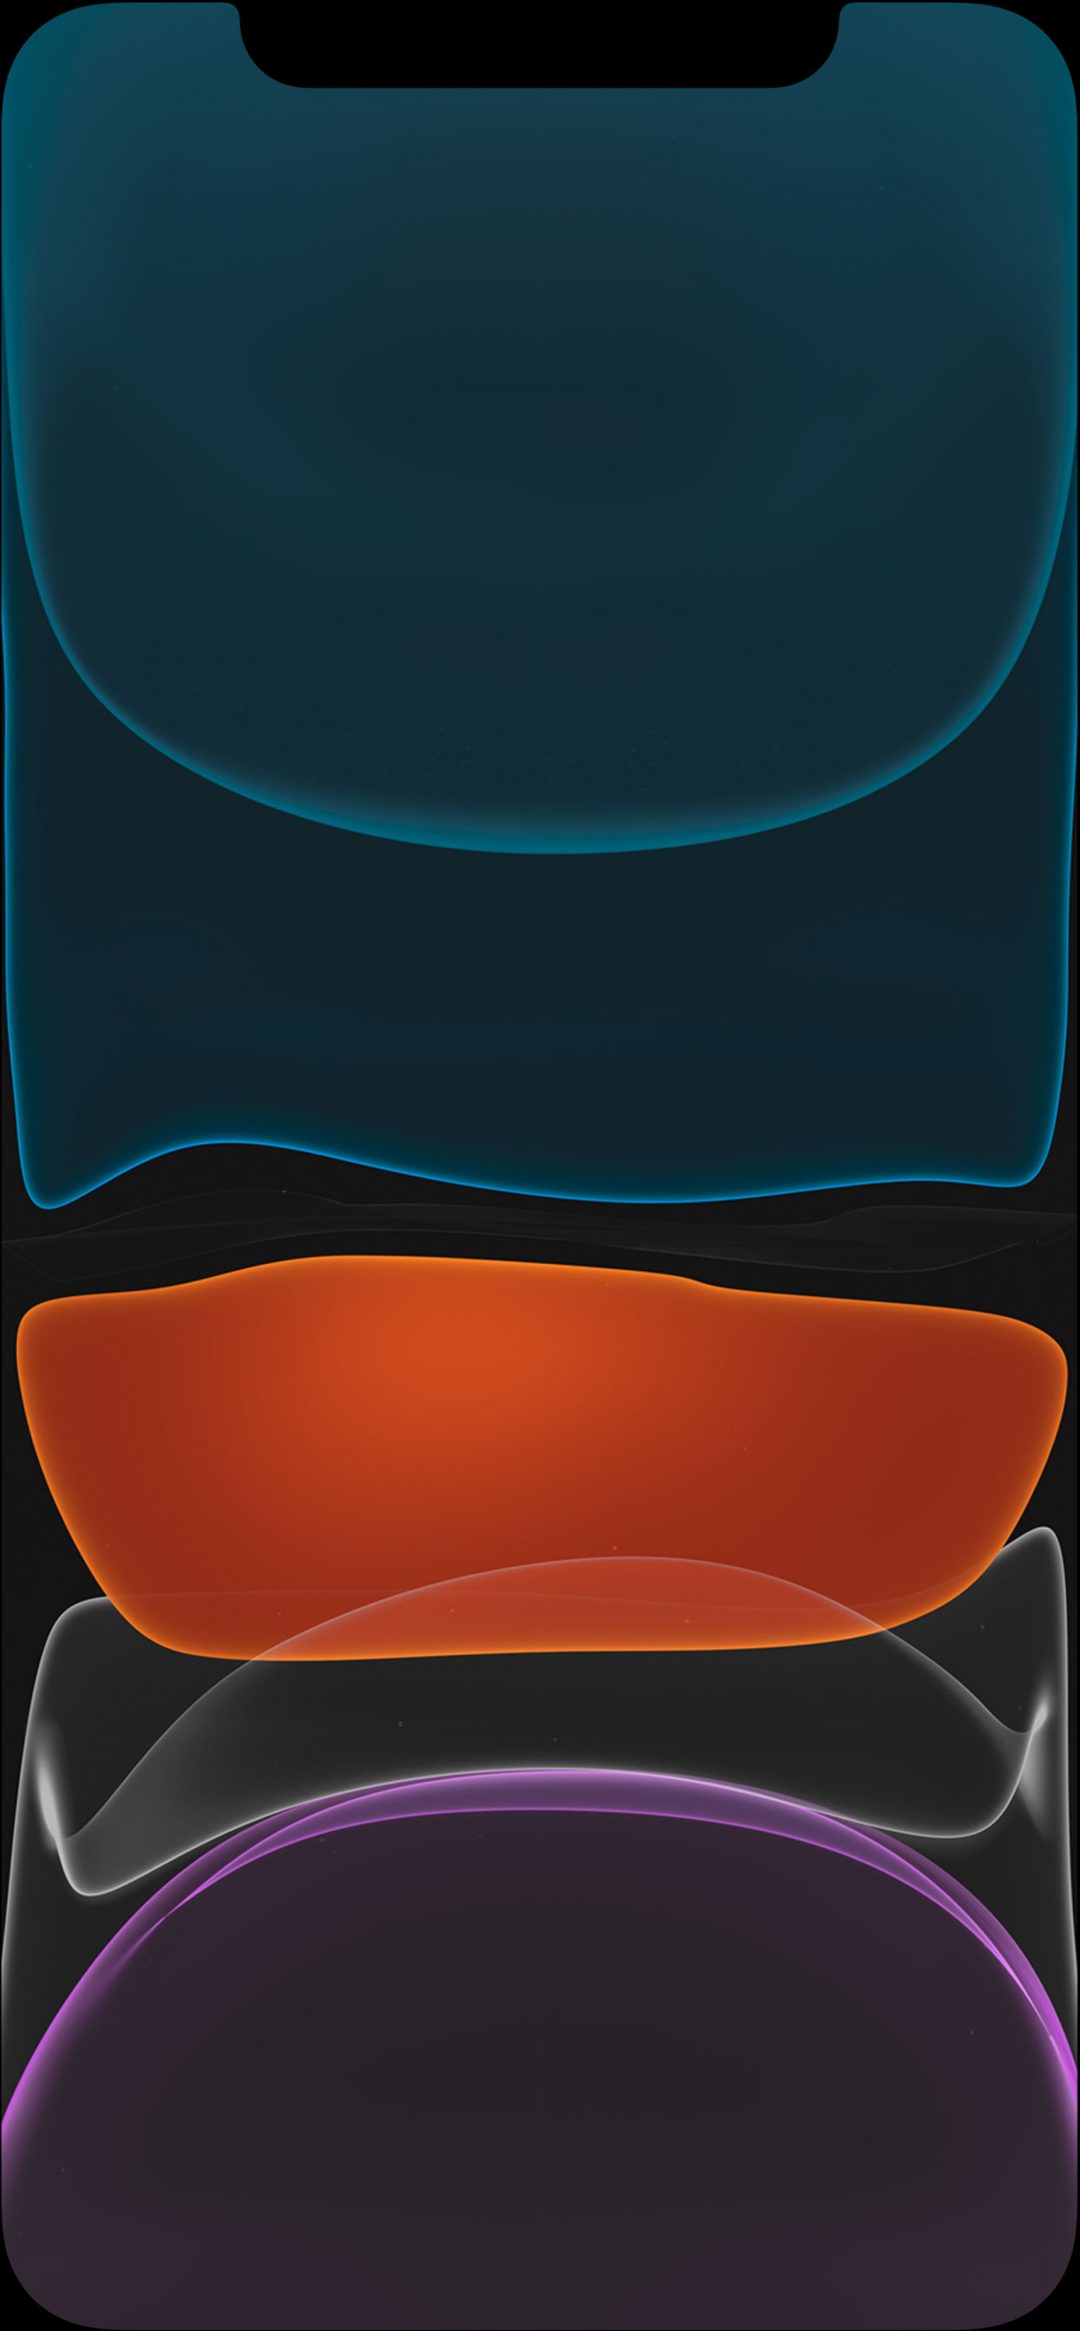 fond d'écran iphone,bleu,orange,bleu électrique,conception,modèle